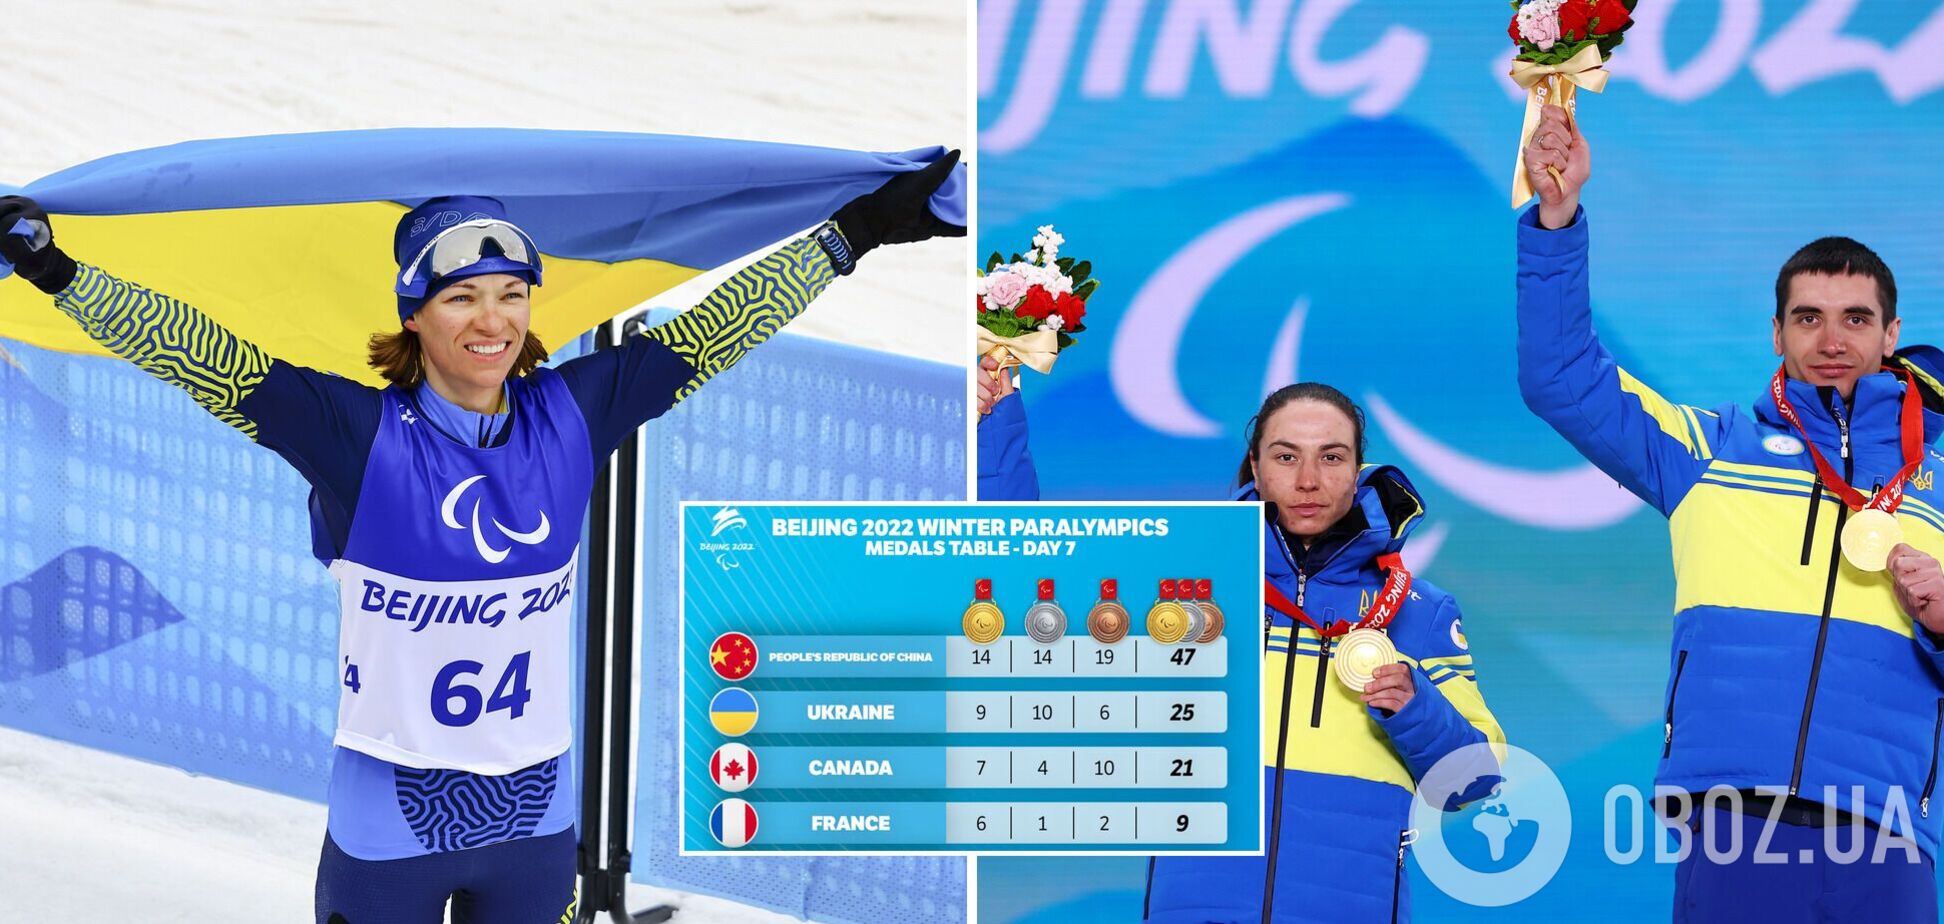 Українці встановили рекорд зимових Паралімпіад із золотих медалей, здобувши три перемоги за день у біатлоні